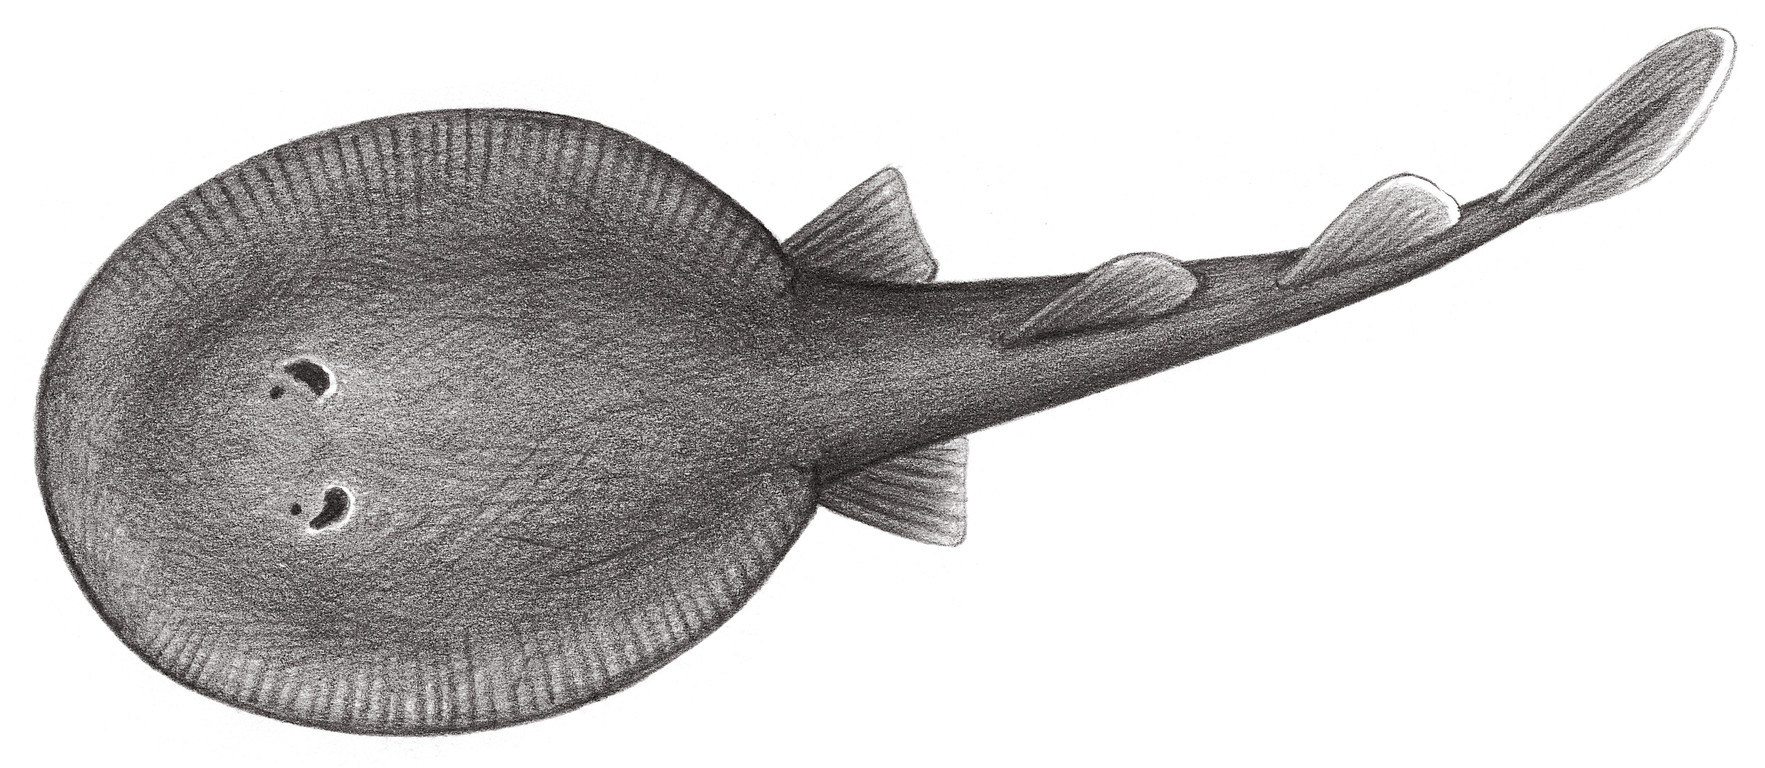 121.	深海電鰩 Benthobatis moresbyi Alcock, 1898